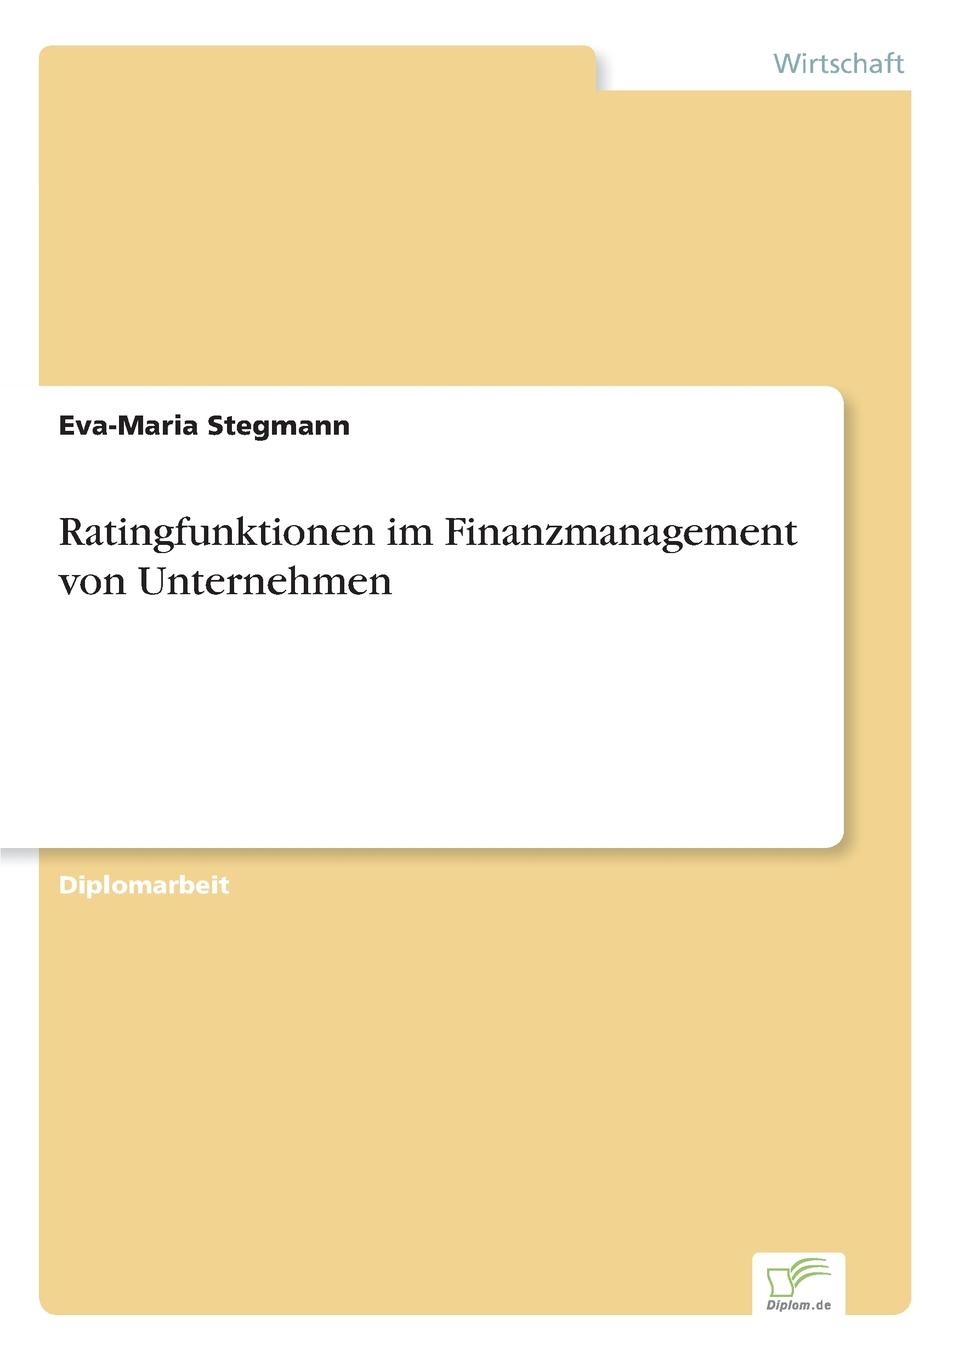 Eva-Maria Stegmann Ratingfunktionen im Finanzmanagement von Unternehmen